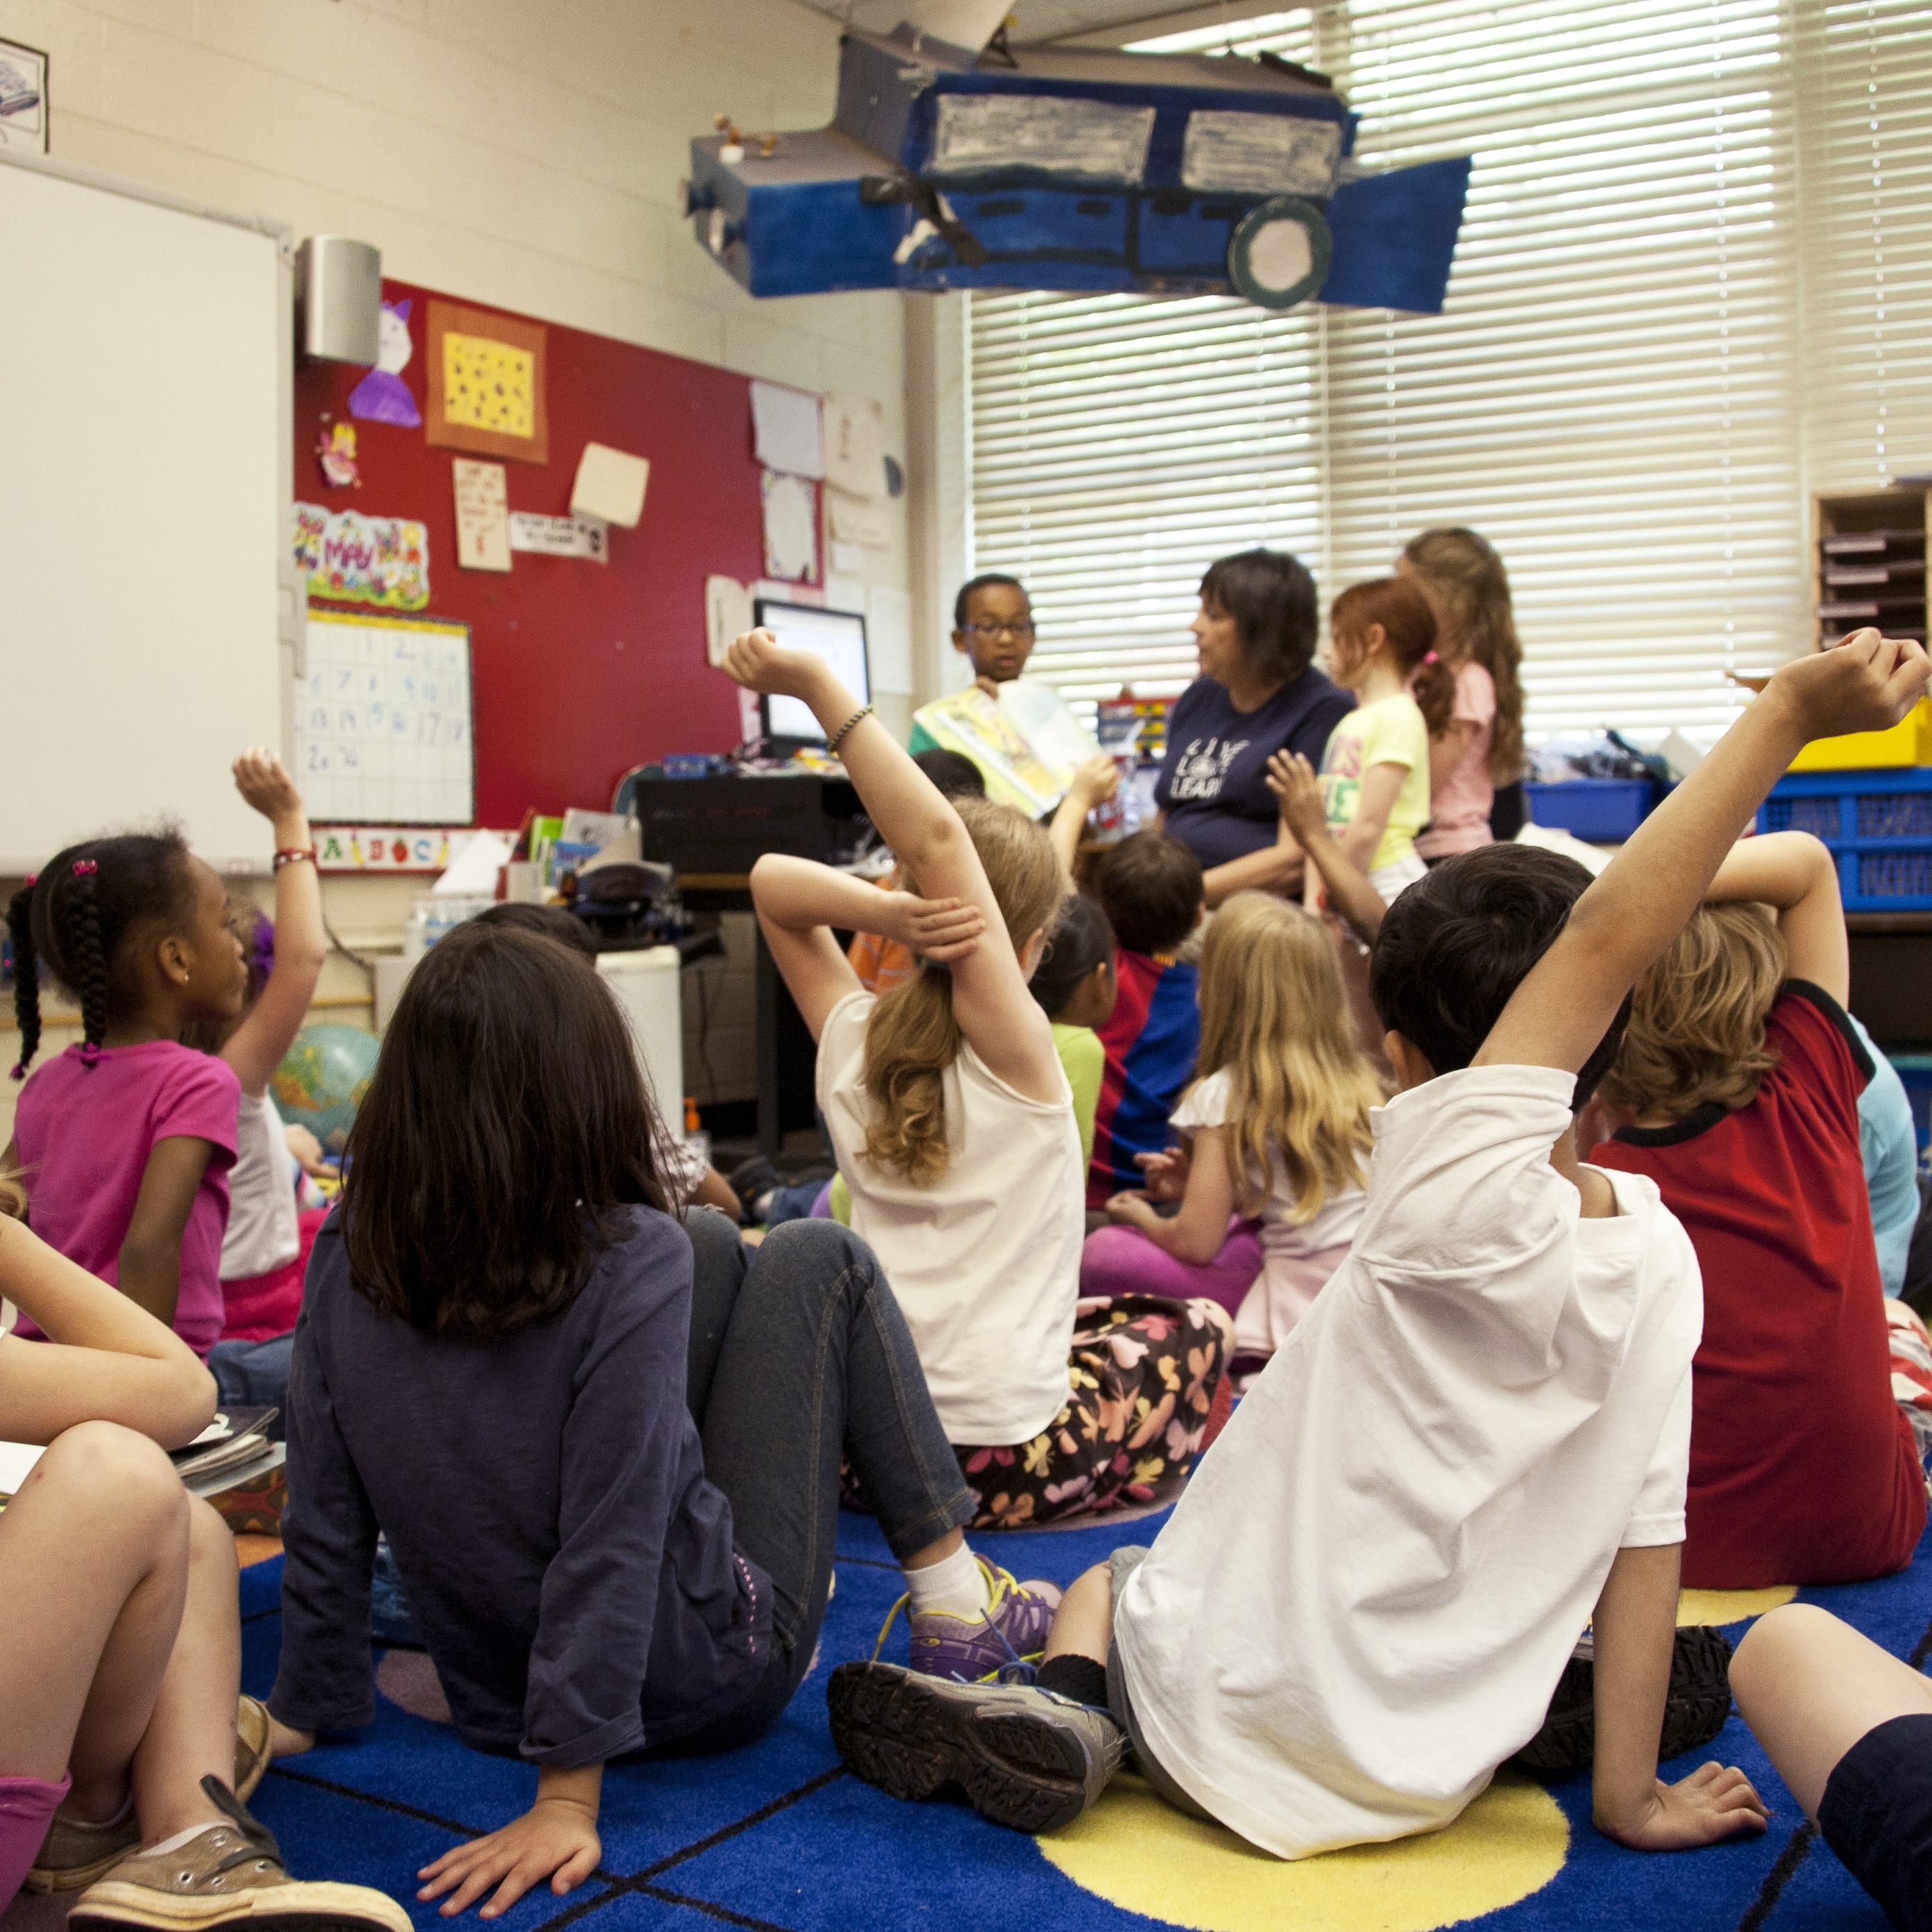 Children with hands raised in school classroom